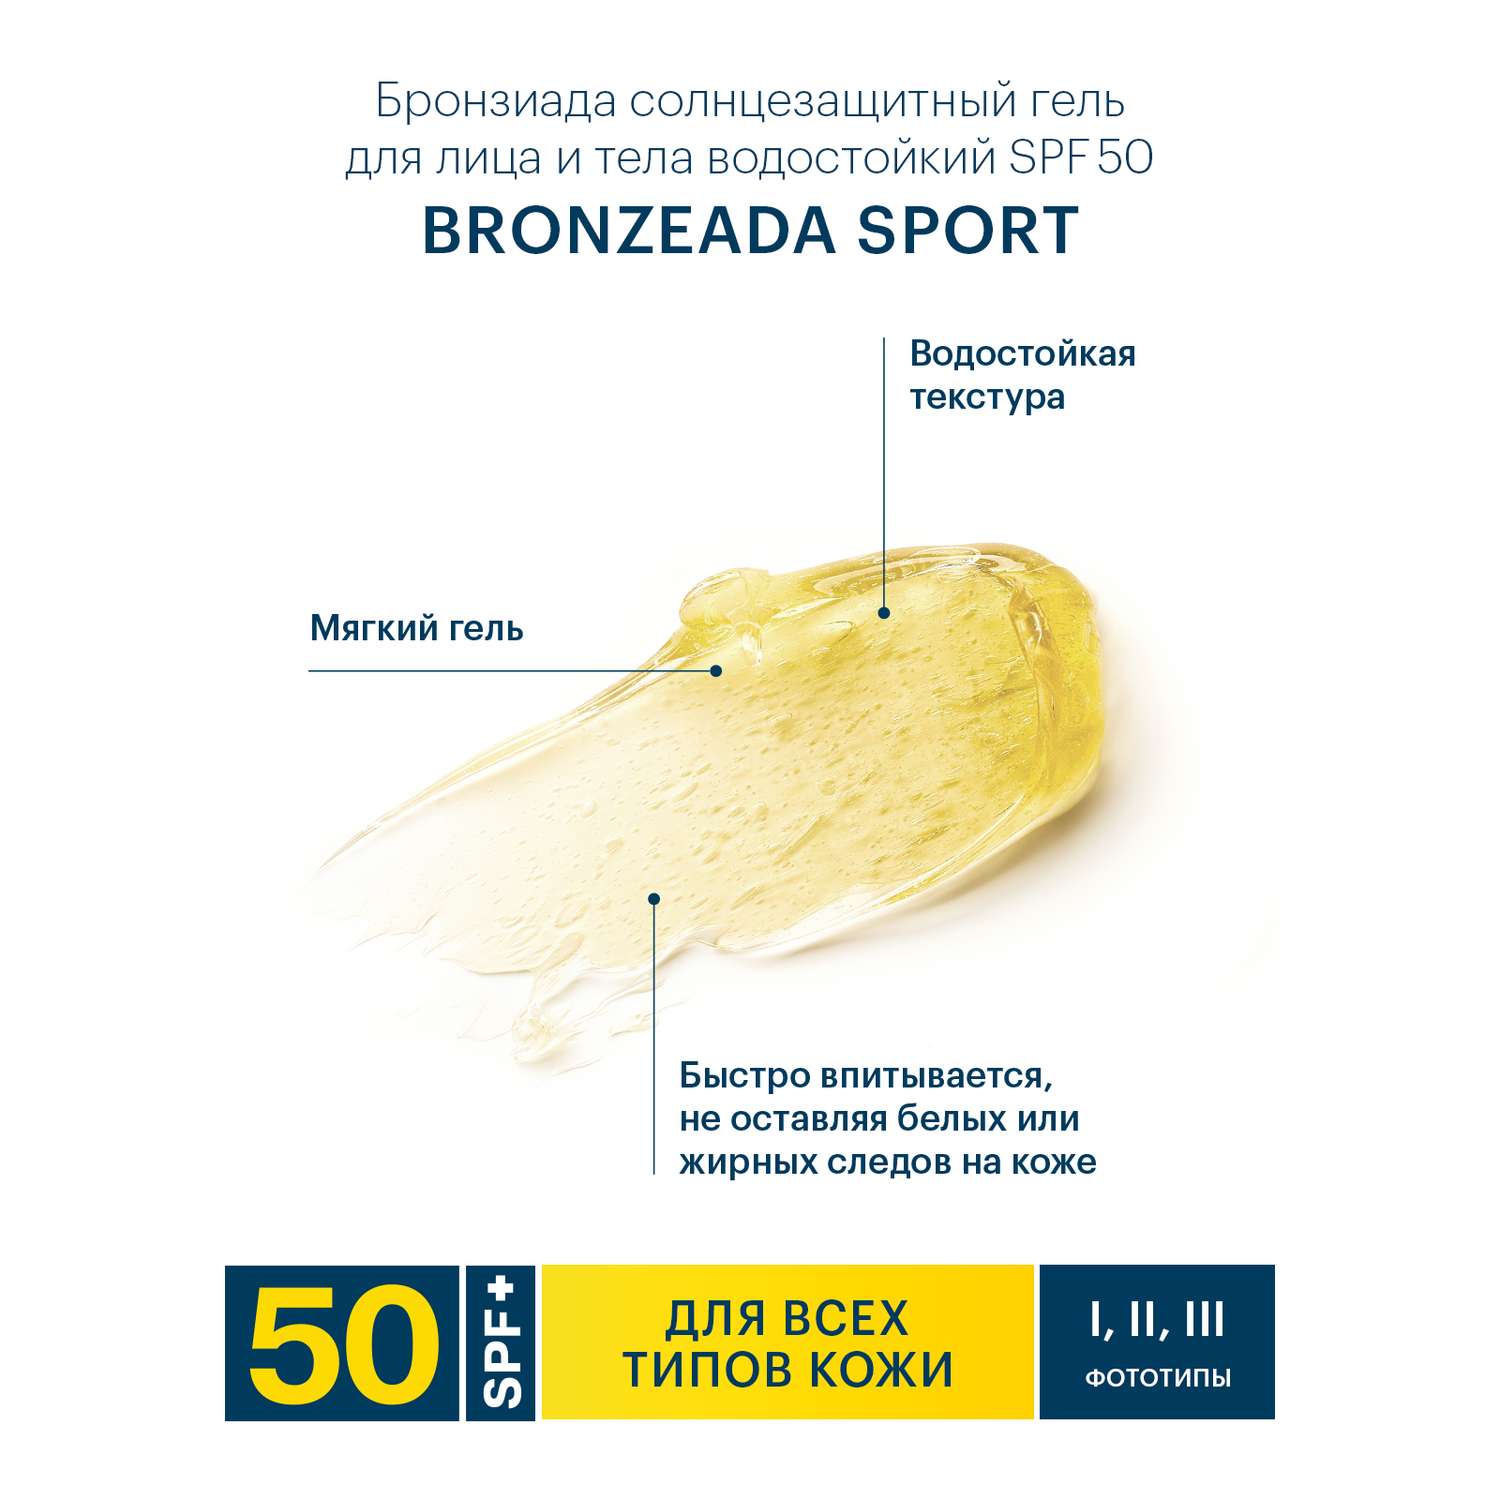 Солнцезащитный гель Librederm BRONZEADA SPORT для лица и тела SPF 50 - фото 7